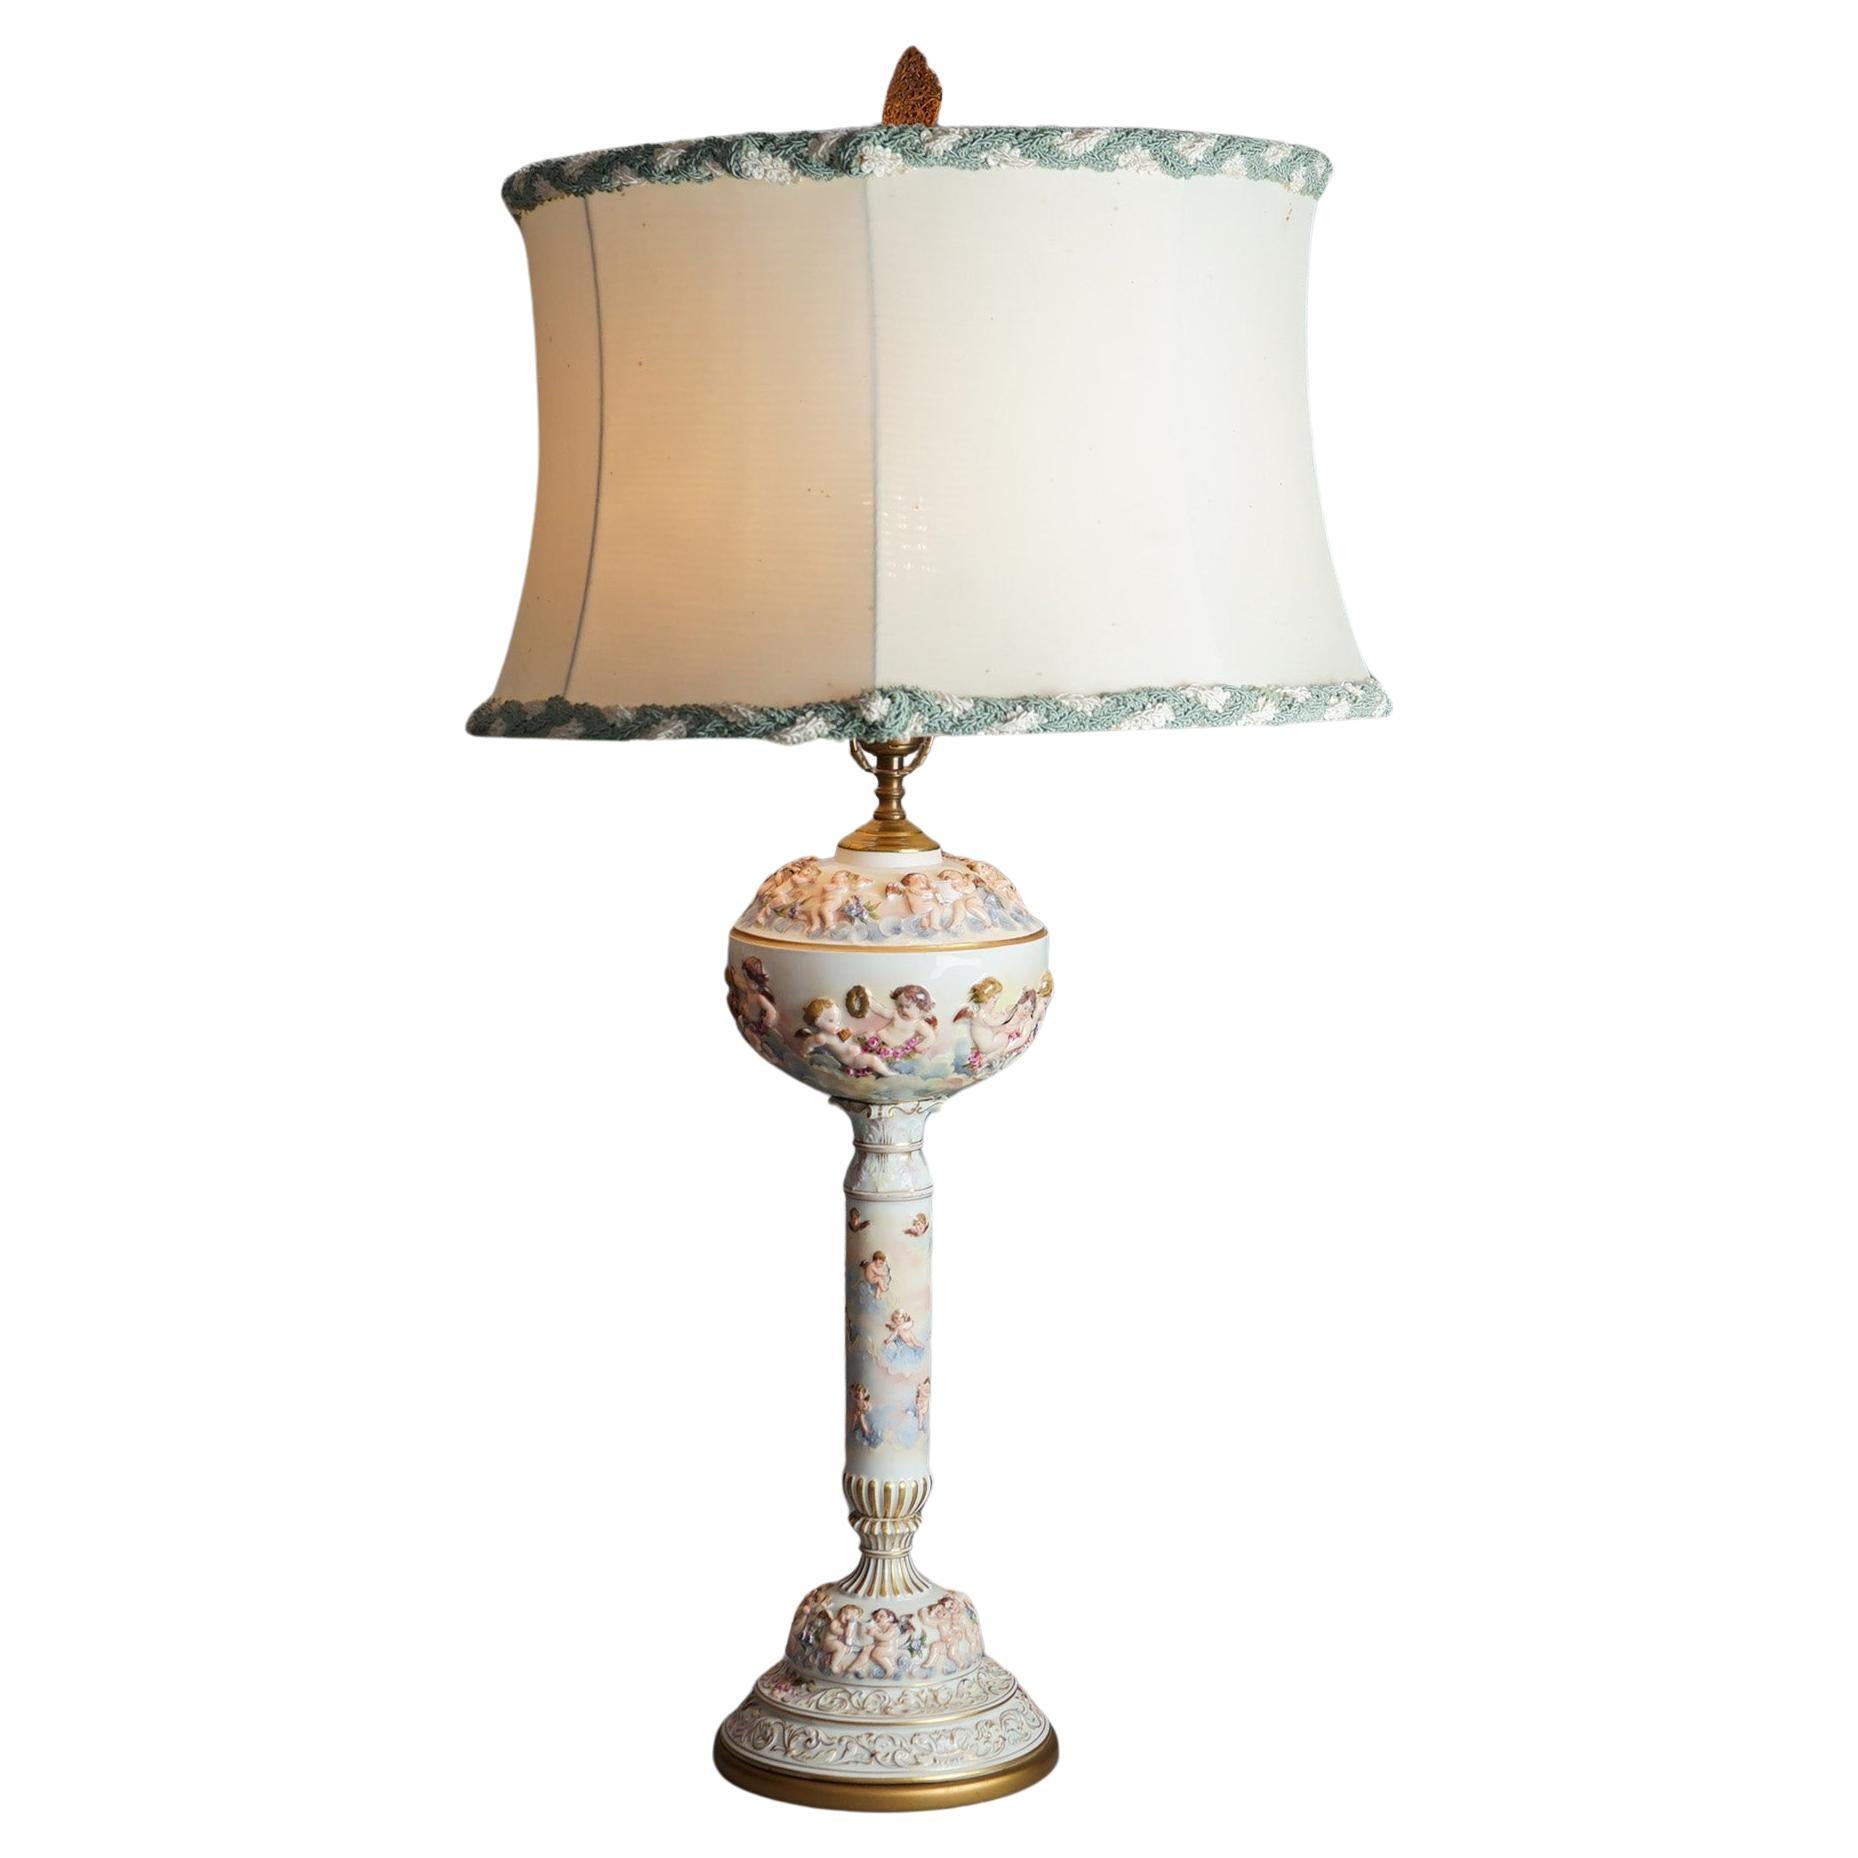 Antique Classical Italian Embossed Porcelain Cherub Table Lamp, c1920